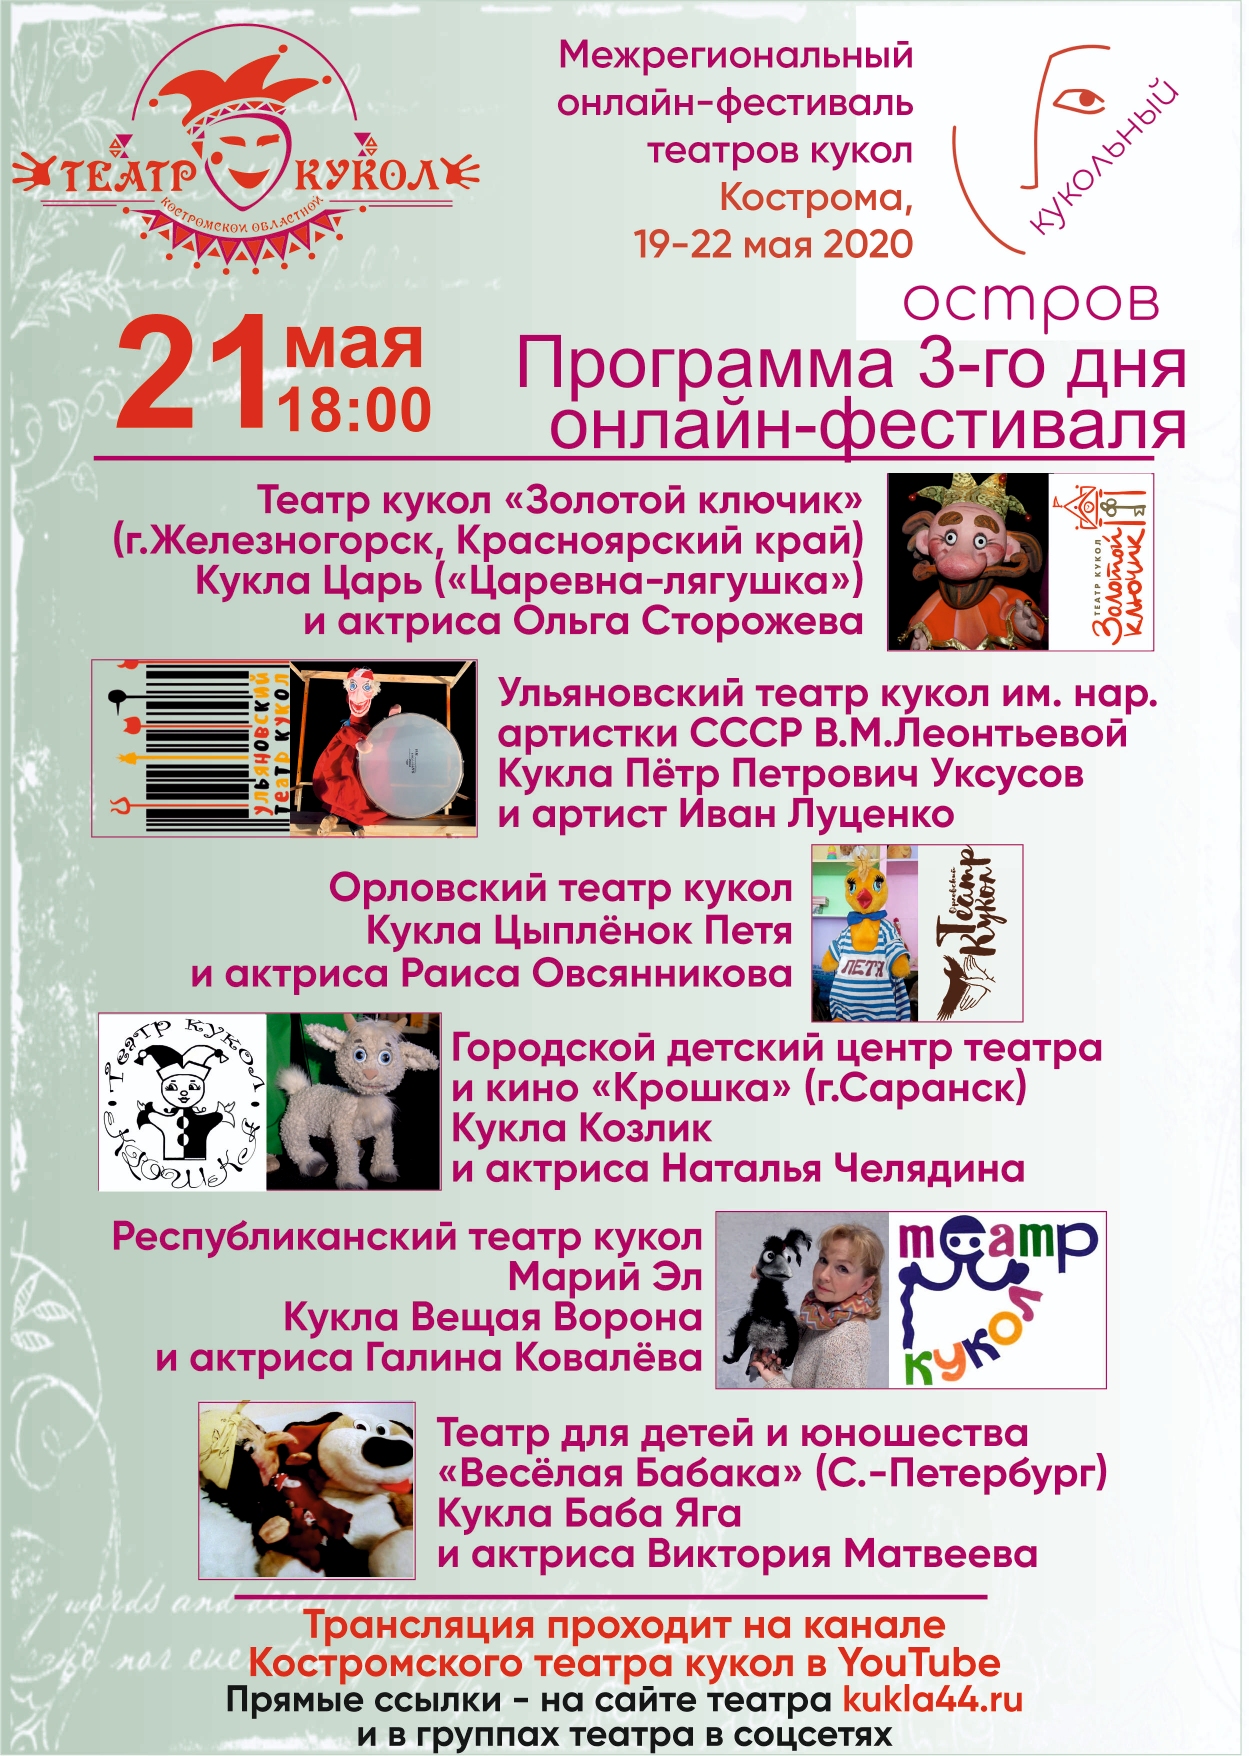 Театр "Крошка" - участник онлайн-фестиваля "Кукольный остров"!!! 